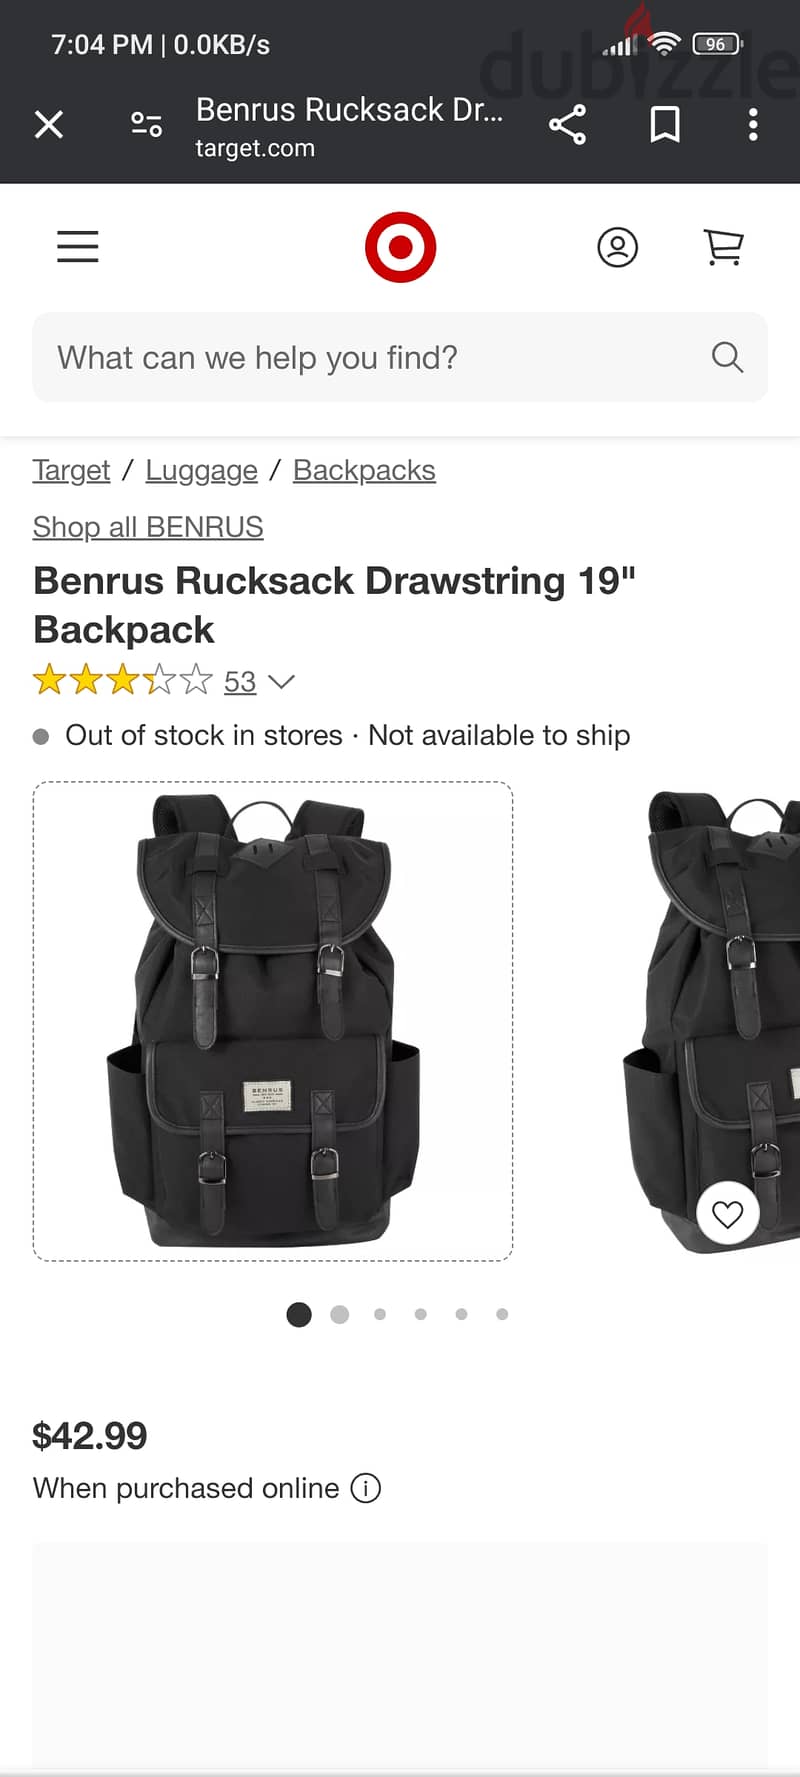 Benrus Rucksack Drawstring 19" Backpack 3